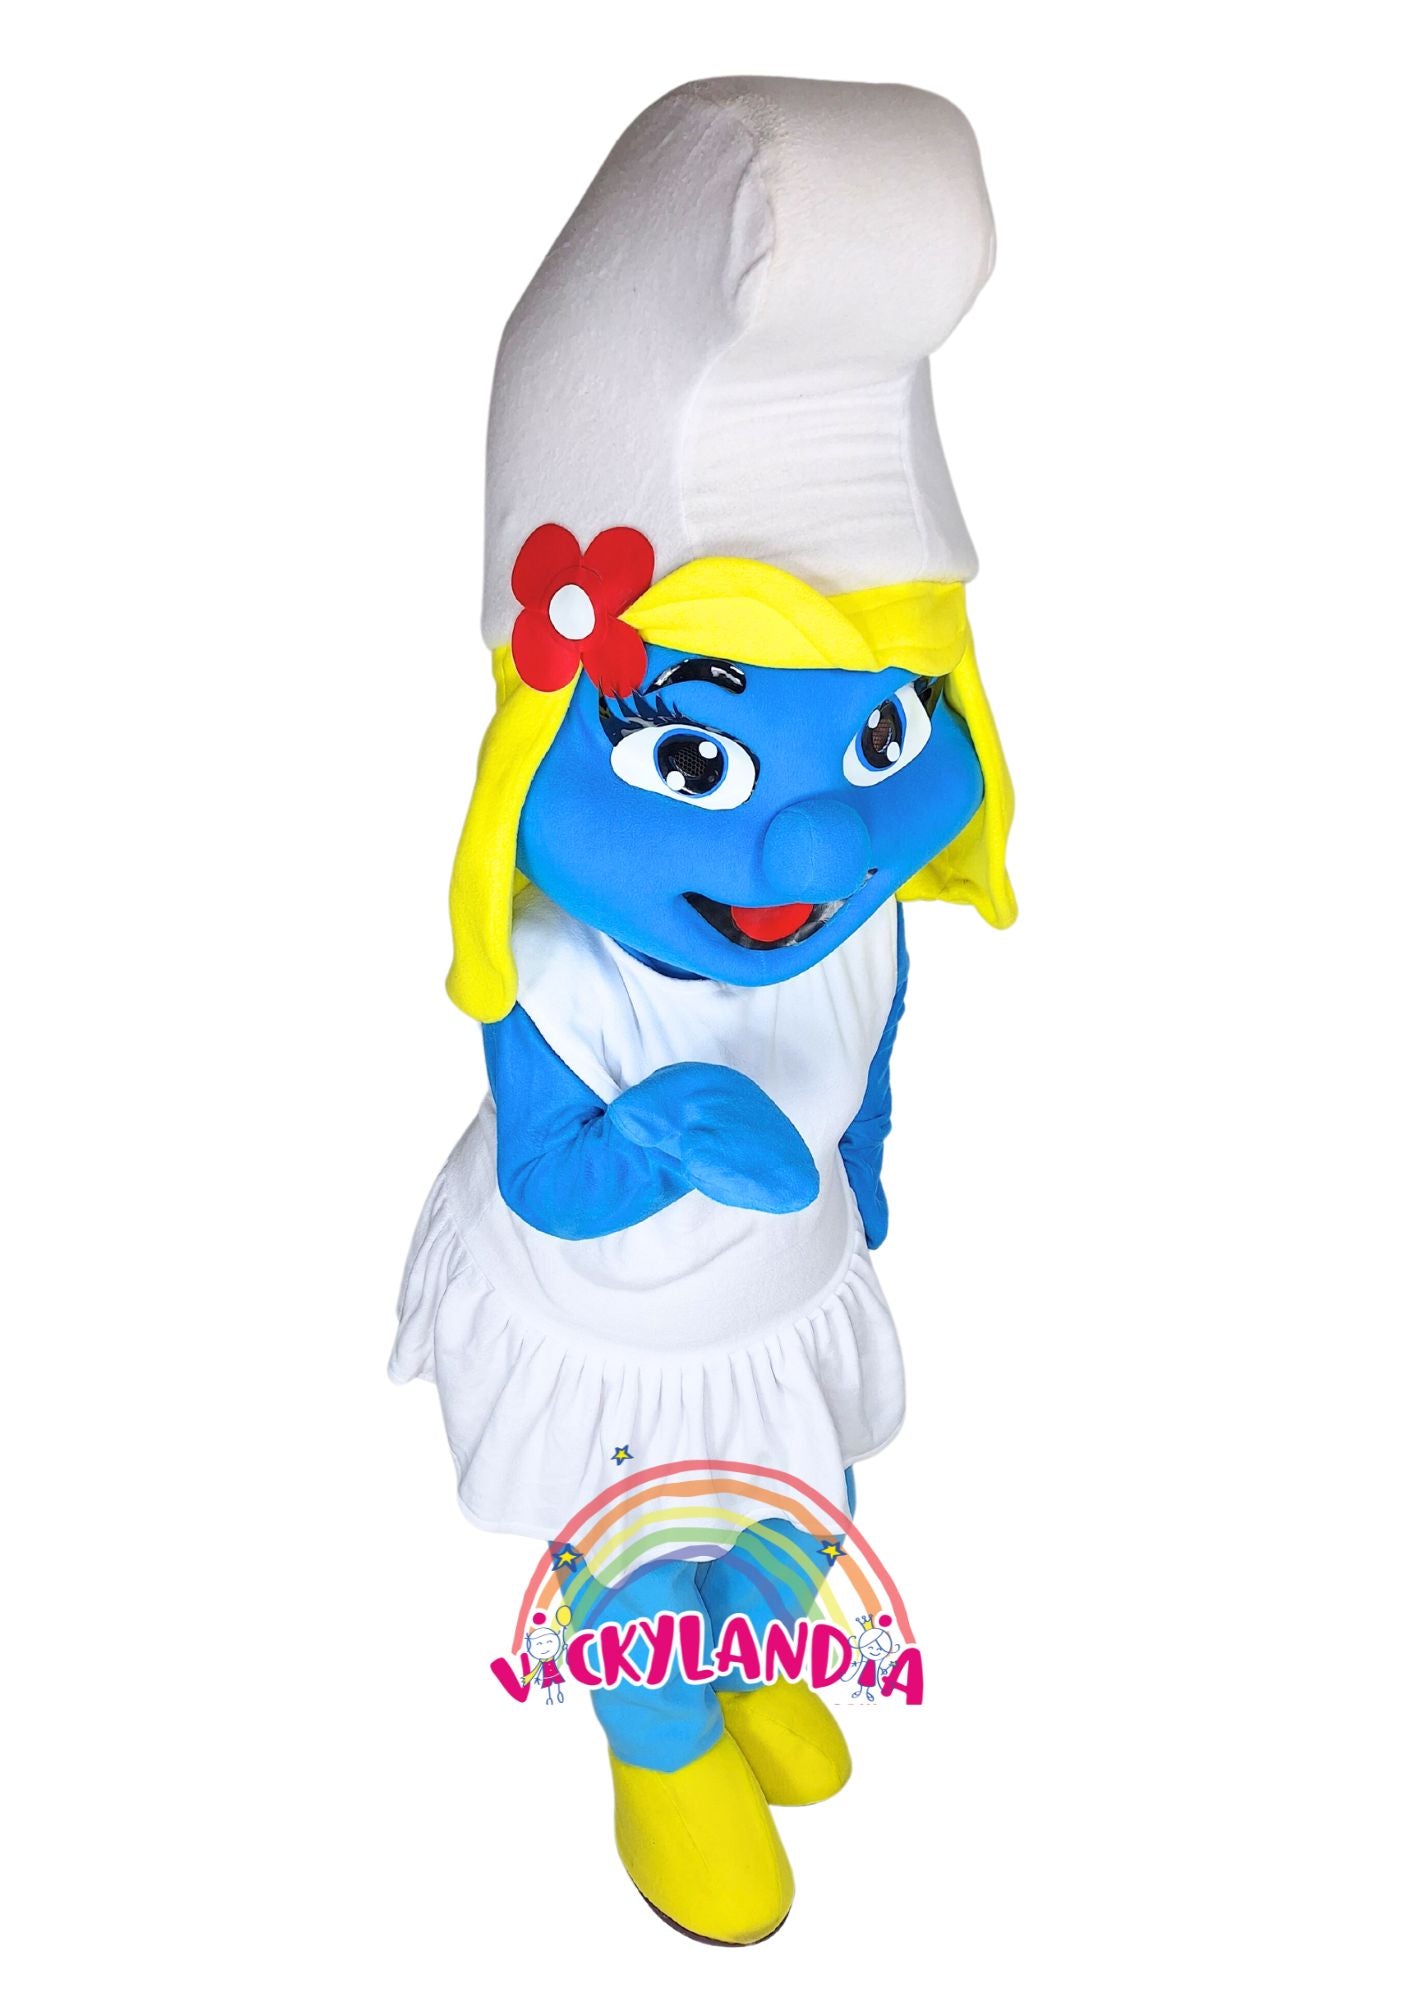 Descubre la magia de nuestro muñeco publicitario de Chica Azulada en Vickylandia. Son disfraces cabezones perfectos para fiestas infantiles, shows, cumpleaños, estrategias publicitarias, espectáculos, cabalgatas y cualquier tipo de evento.